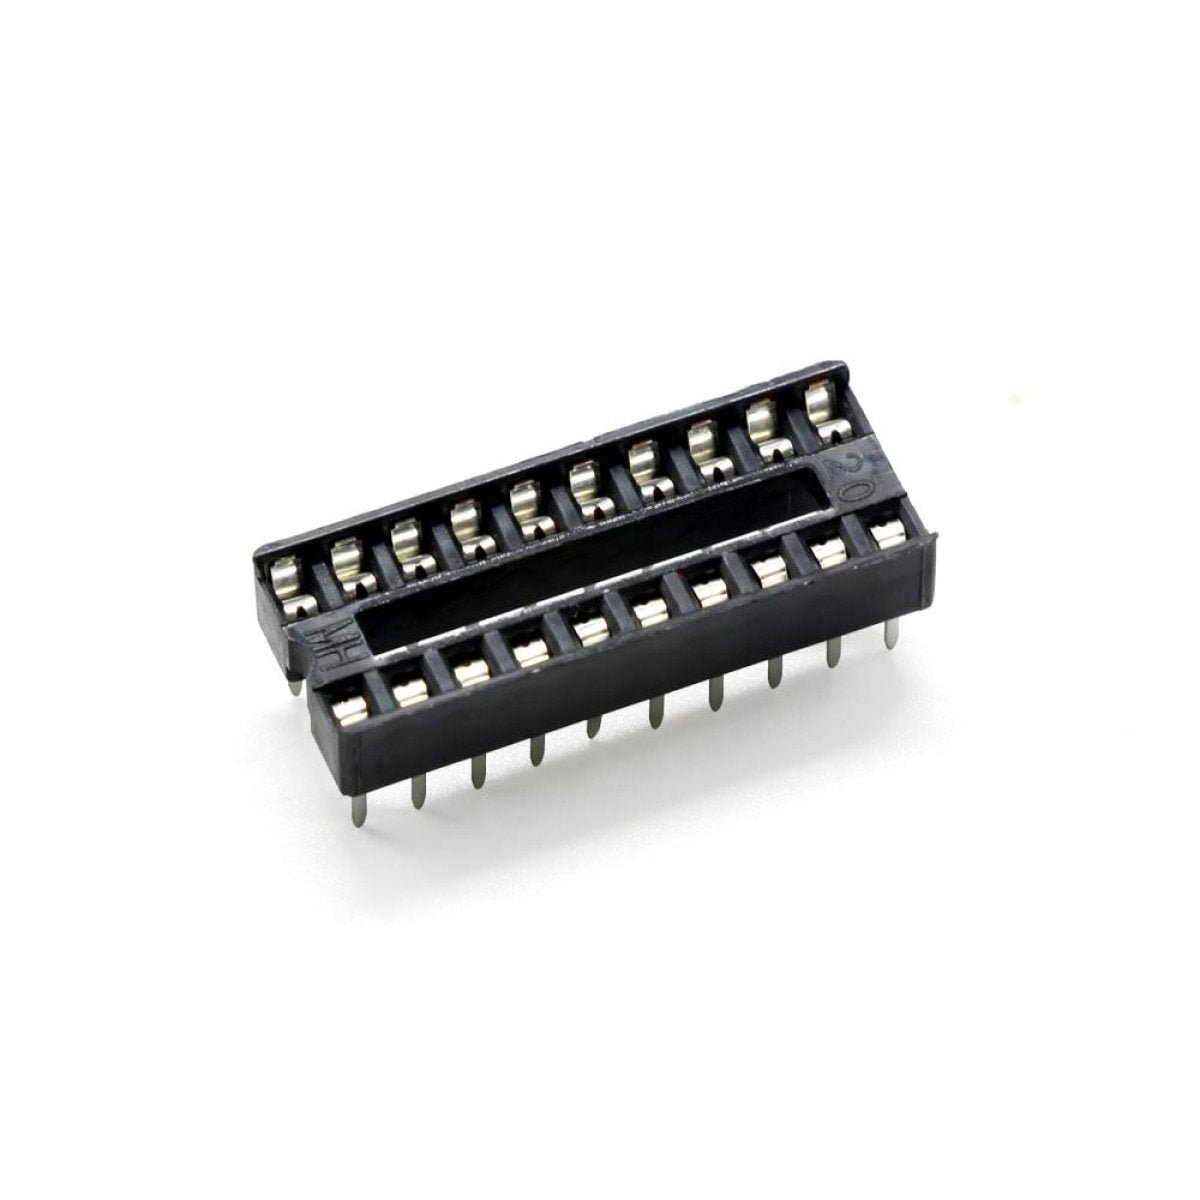 2pcs DIP IC Adaptor Solder Socket 6, 8, 14, 16, 18, 20, 24, 28, 32 Pin - 20 pins - - Asia Sell